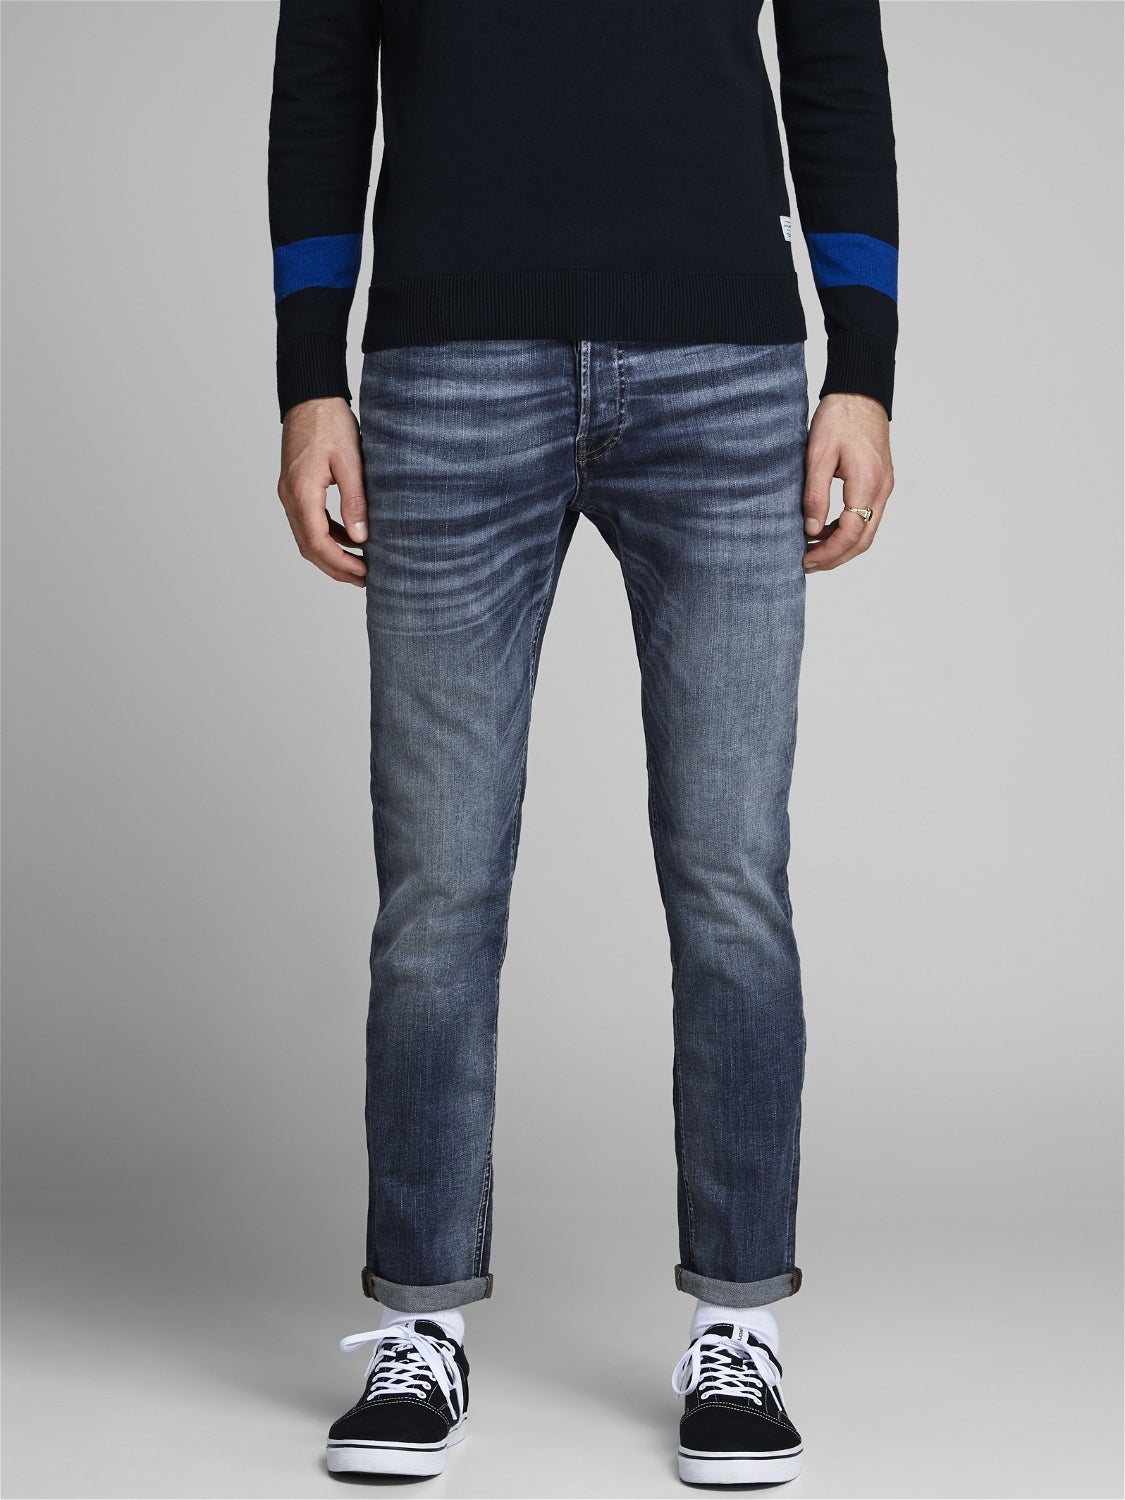 MODA UOMO Jeans Strappato sconto 52% Jack & Jones Jeggings & Skinny & Slim Blu W31/L32 